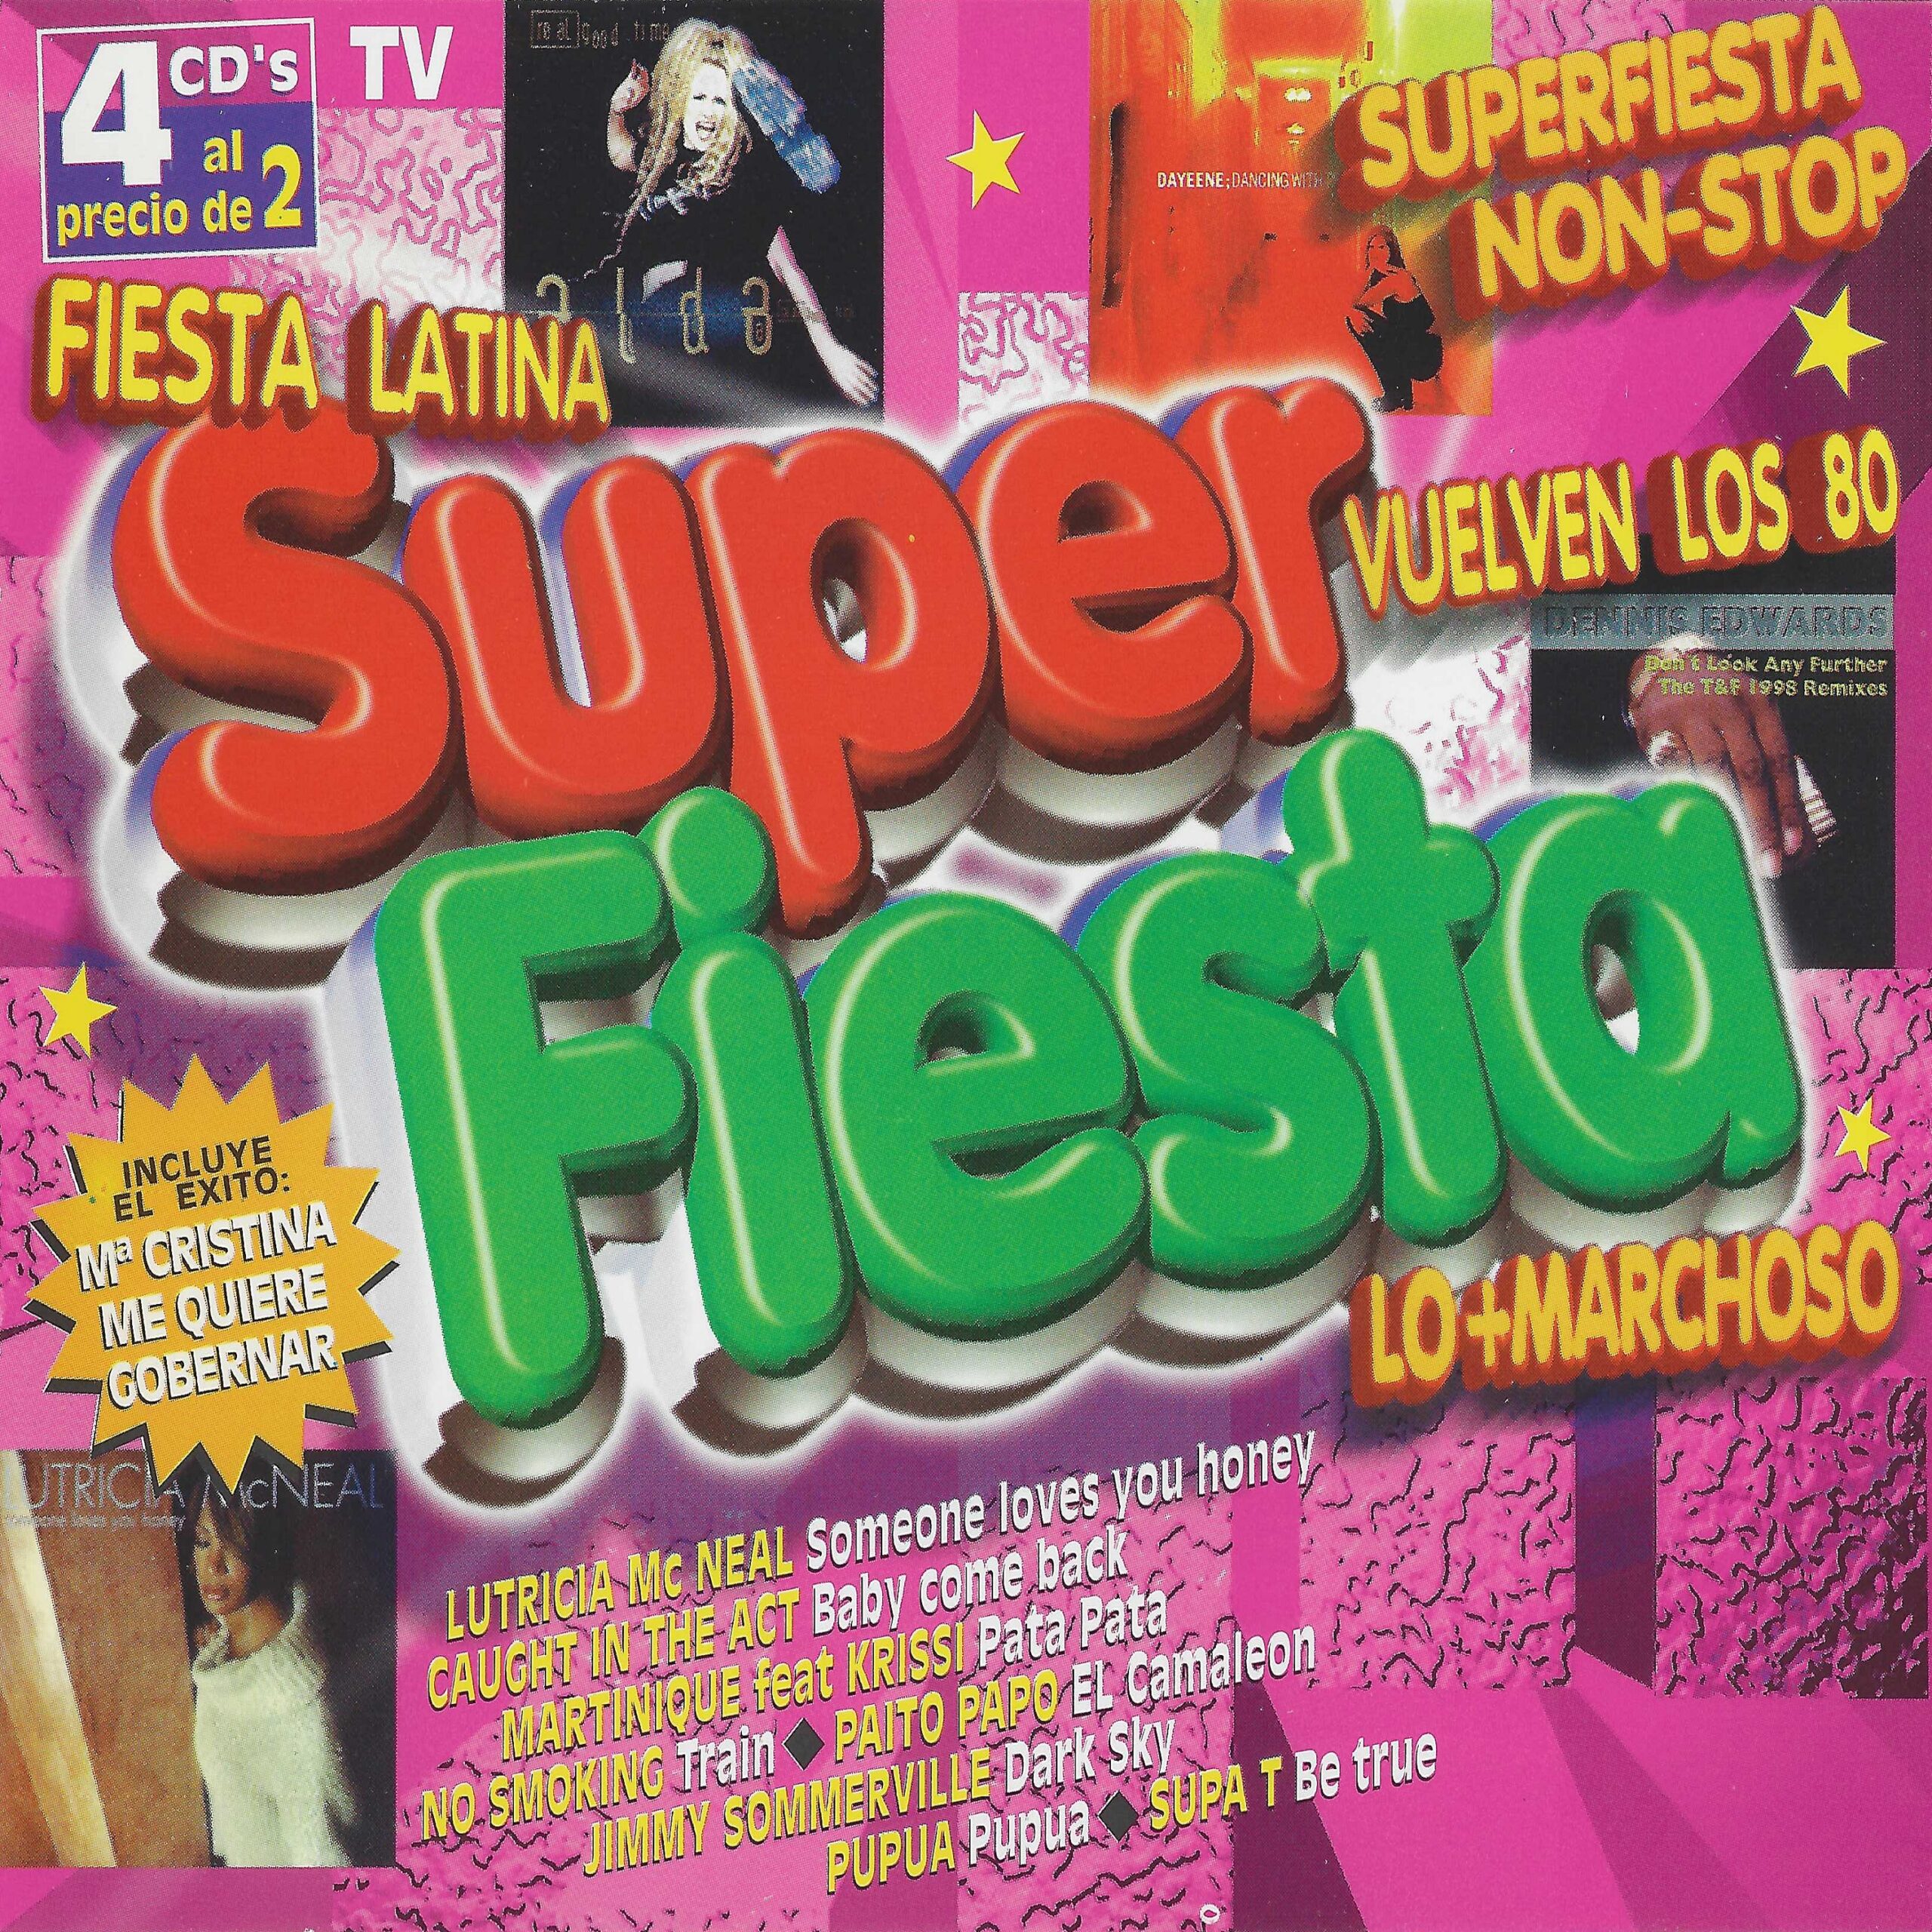 Super Fiesta